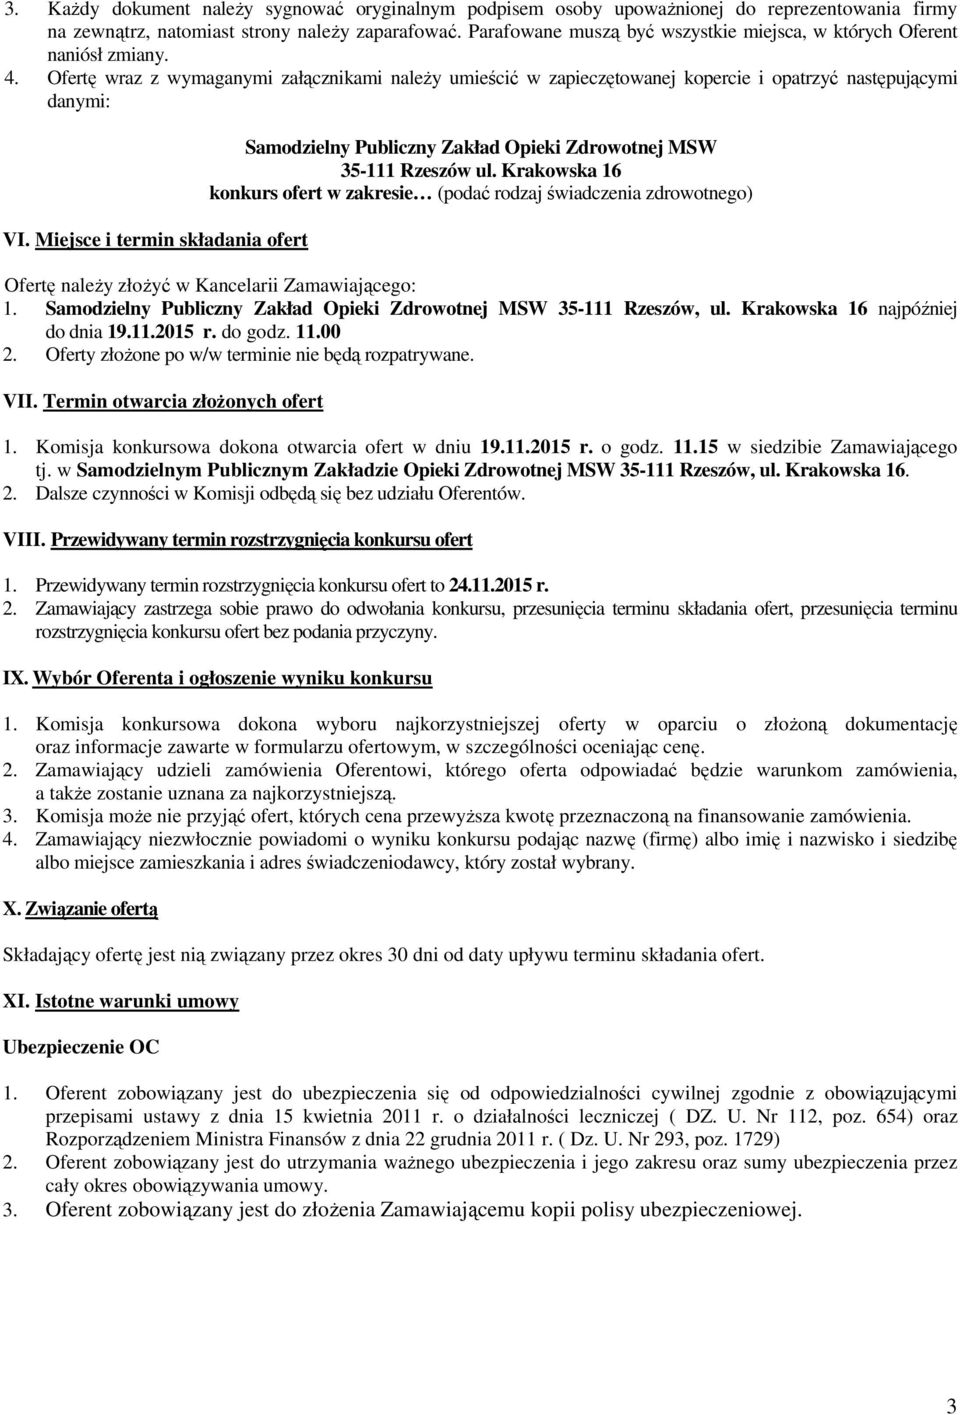 Miejsce i termin składania ofert Samodzielny Publiczny Zakład Opieki Zdrowotnej MSW 35-111 Rzeszów ul.